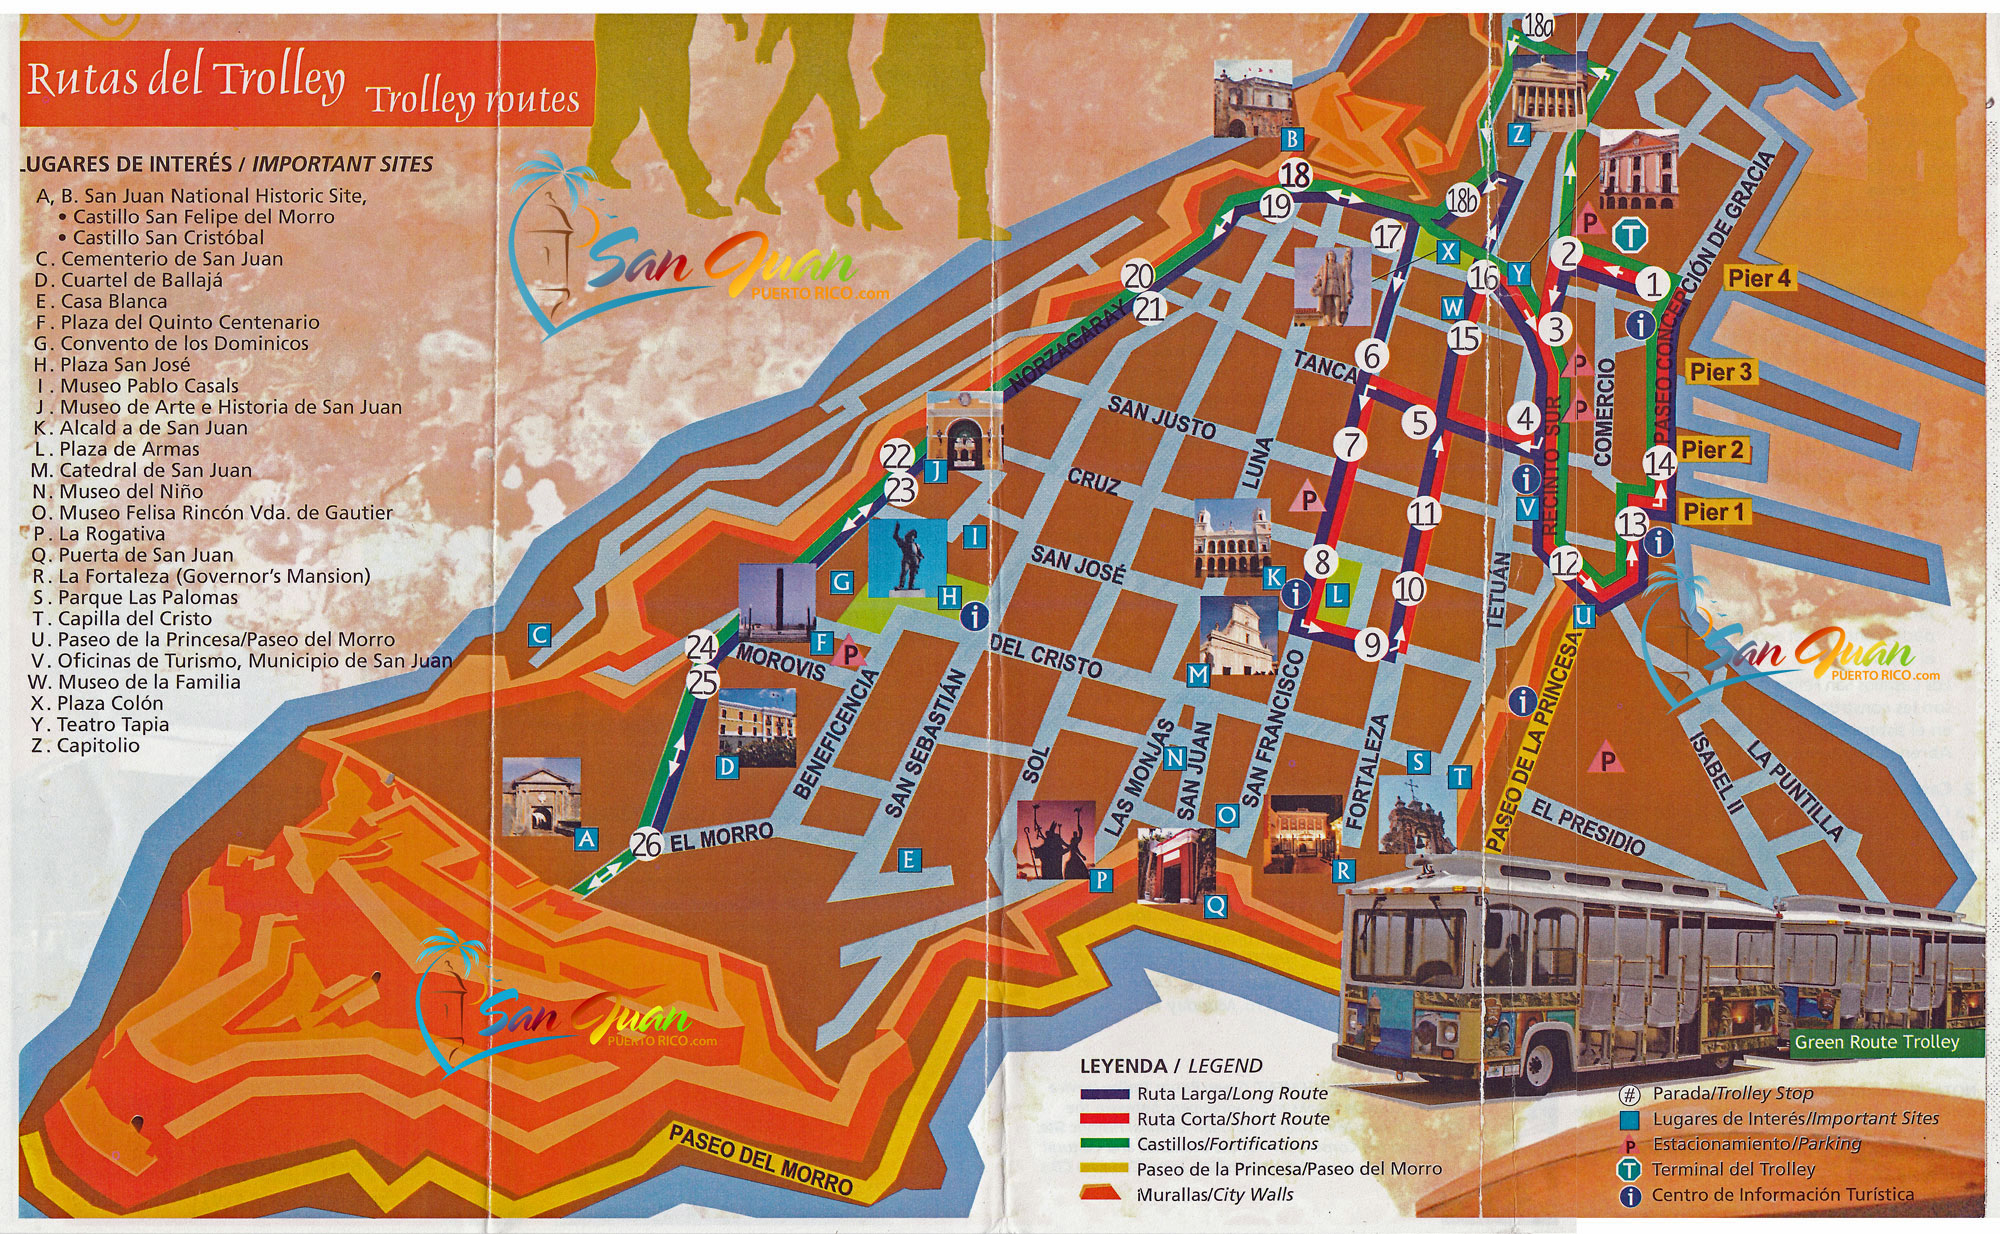 puerto rico walking tour of old san juan walking tour map